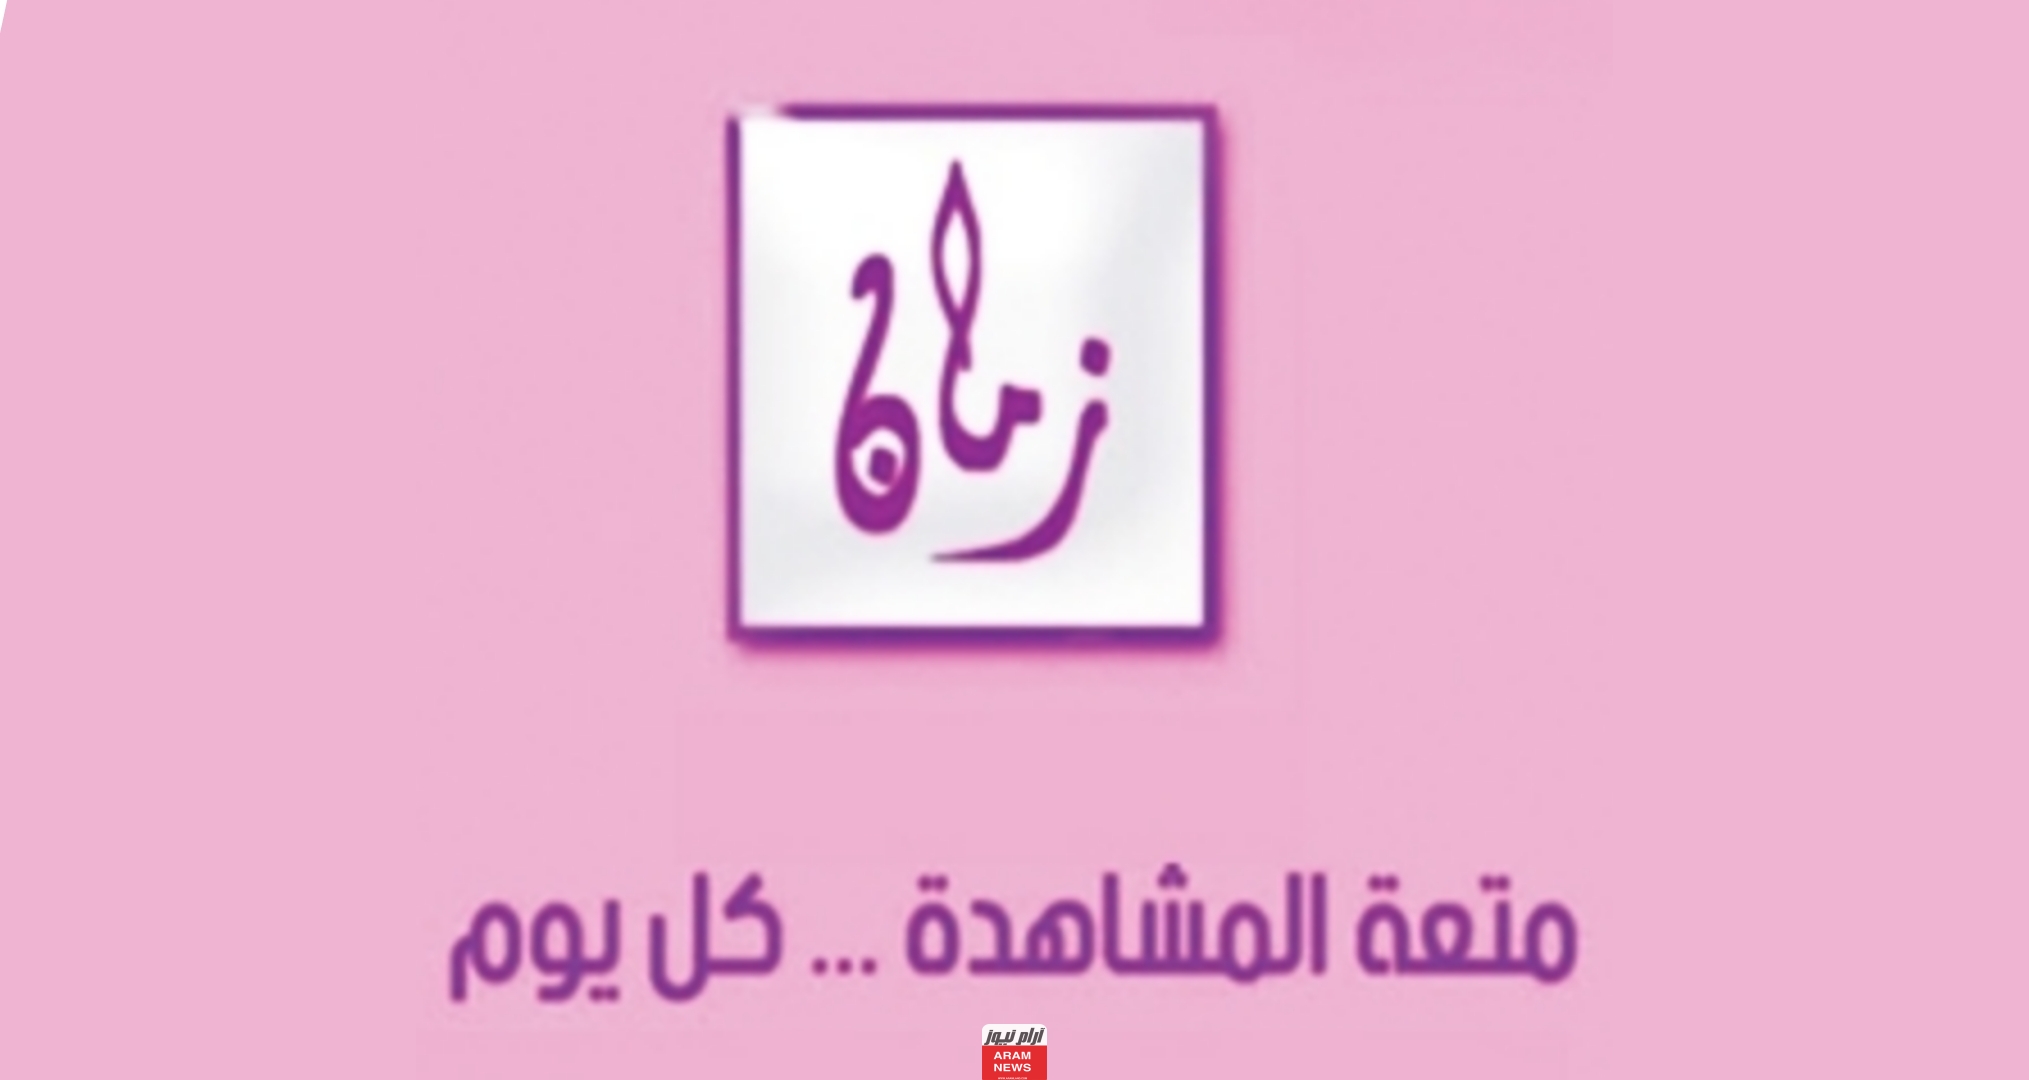 تردد قناة اليوم زمان الجديد على النايل سات وعربسات AL YOOM ZAMAN